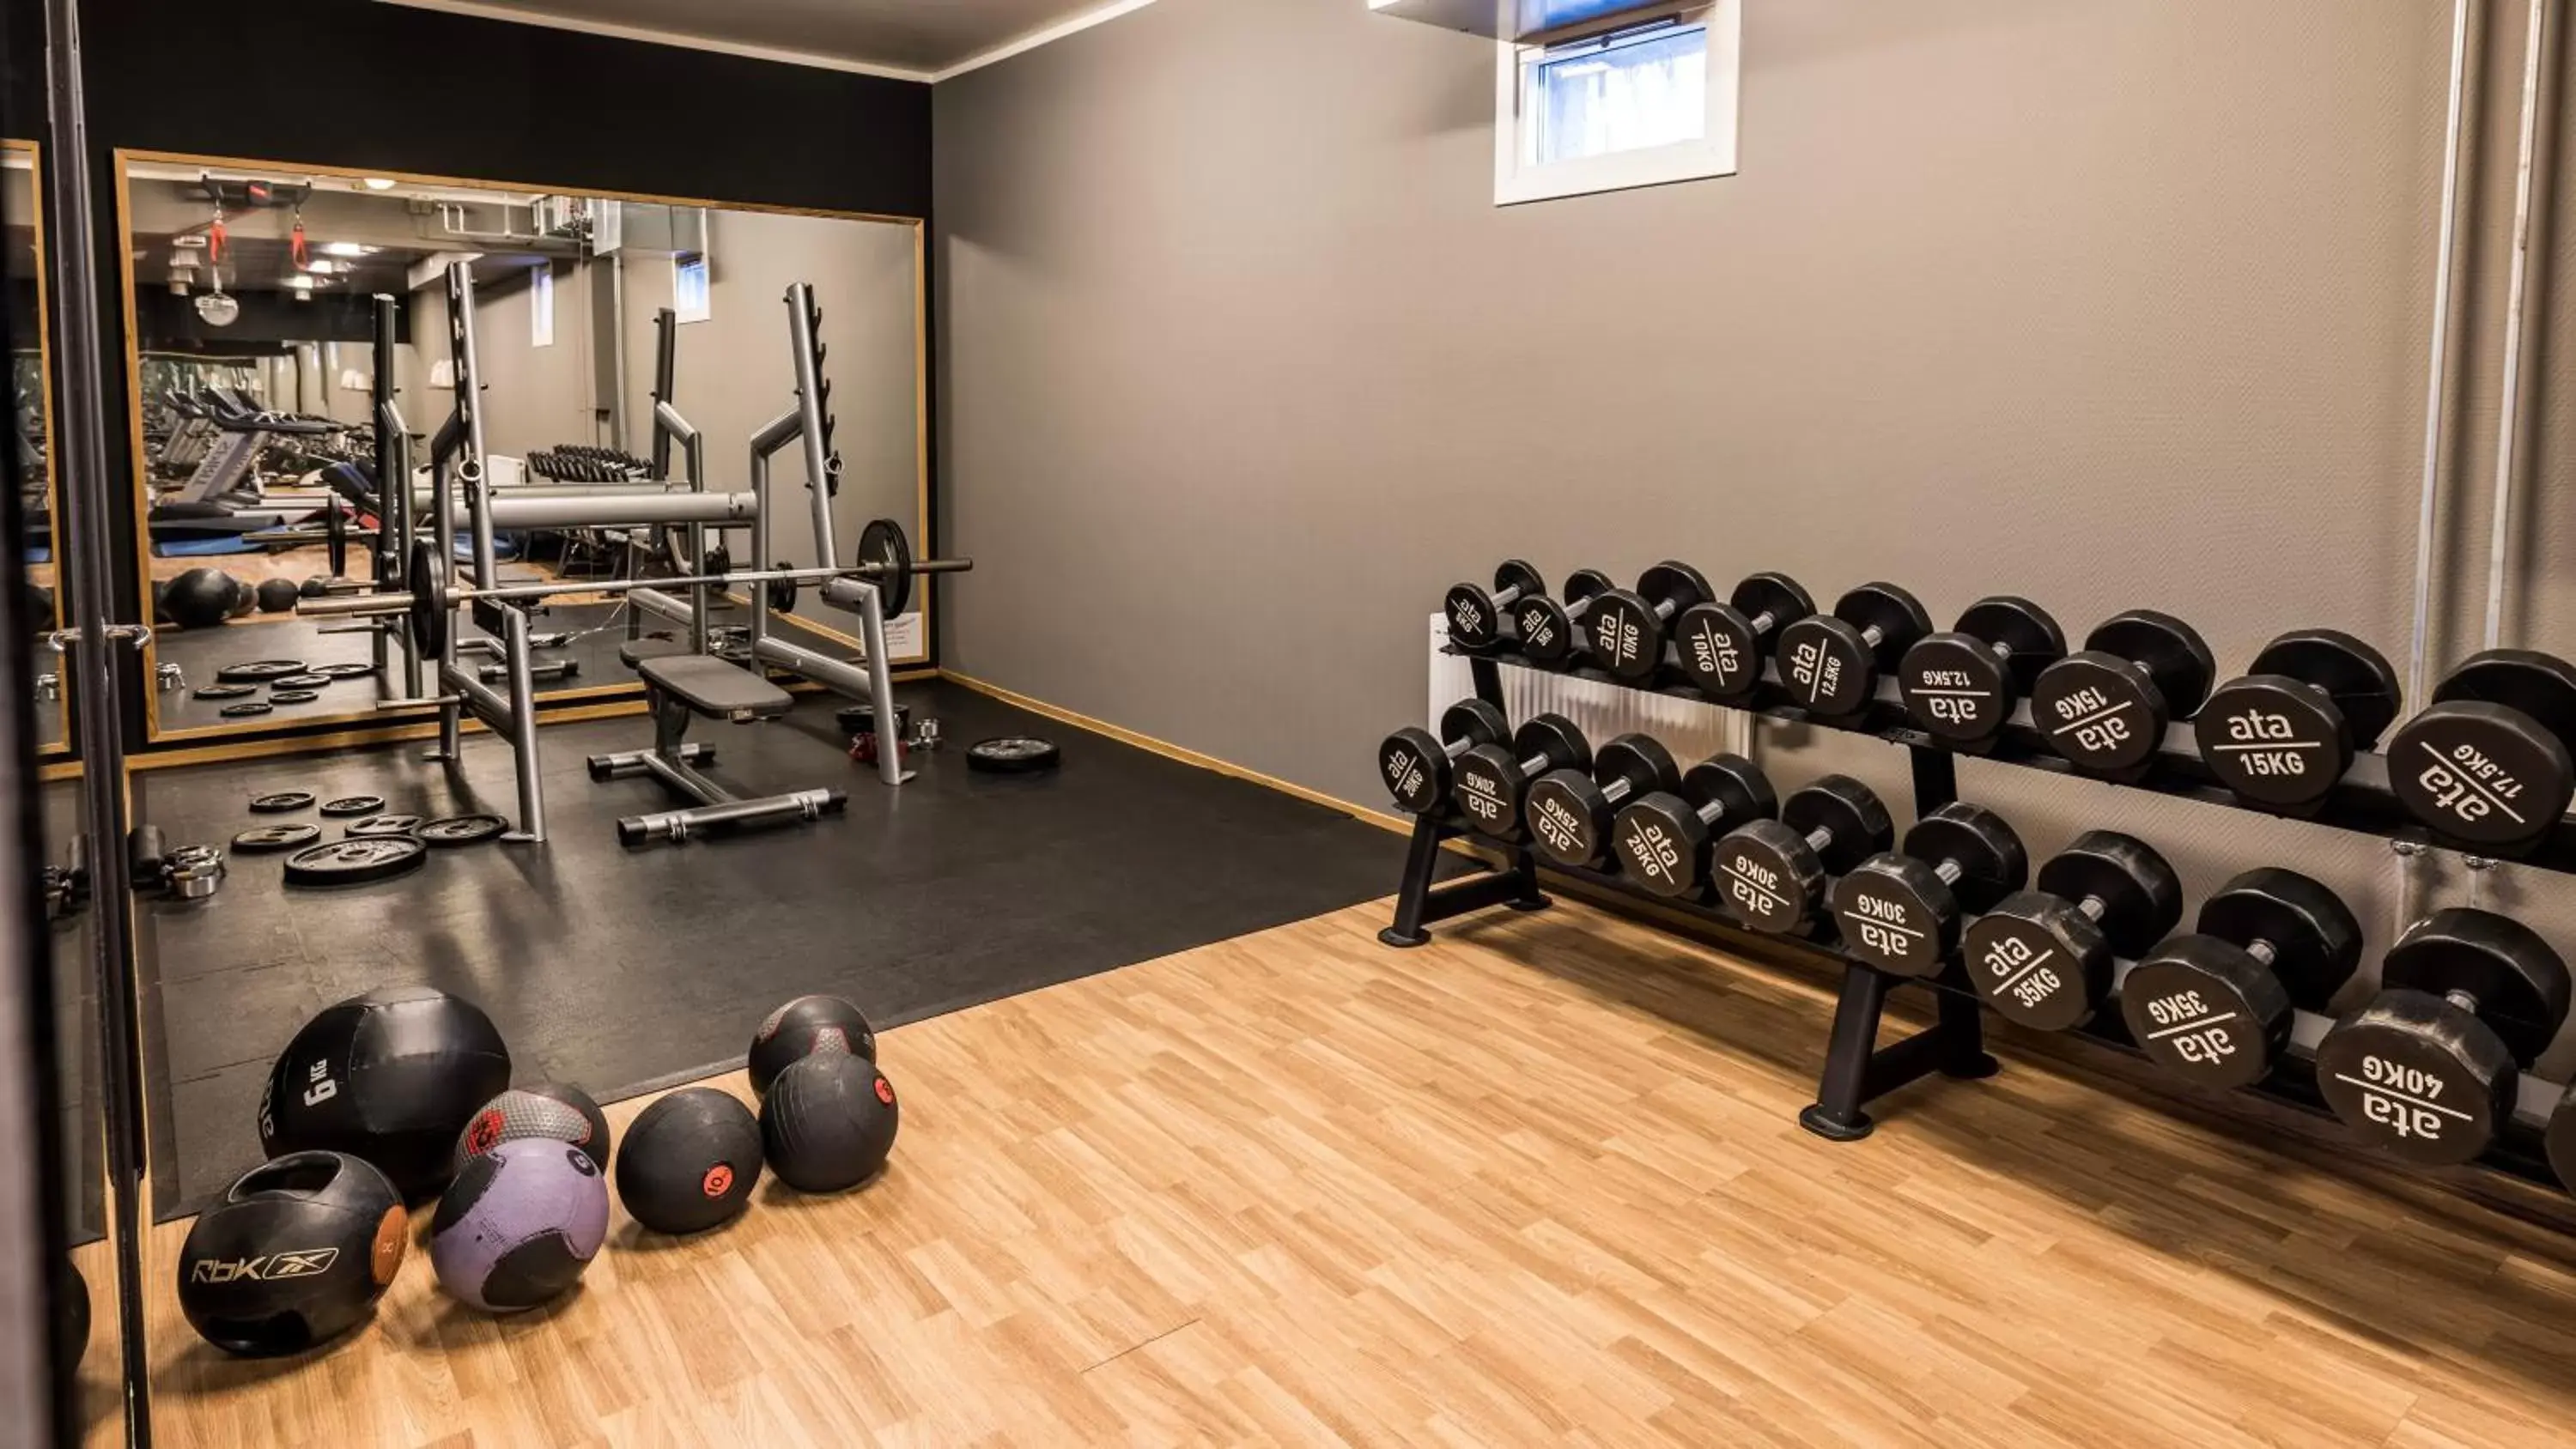 Fitness centre/facilities, Fitness Center/Facilities in Klækken Hotel